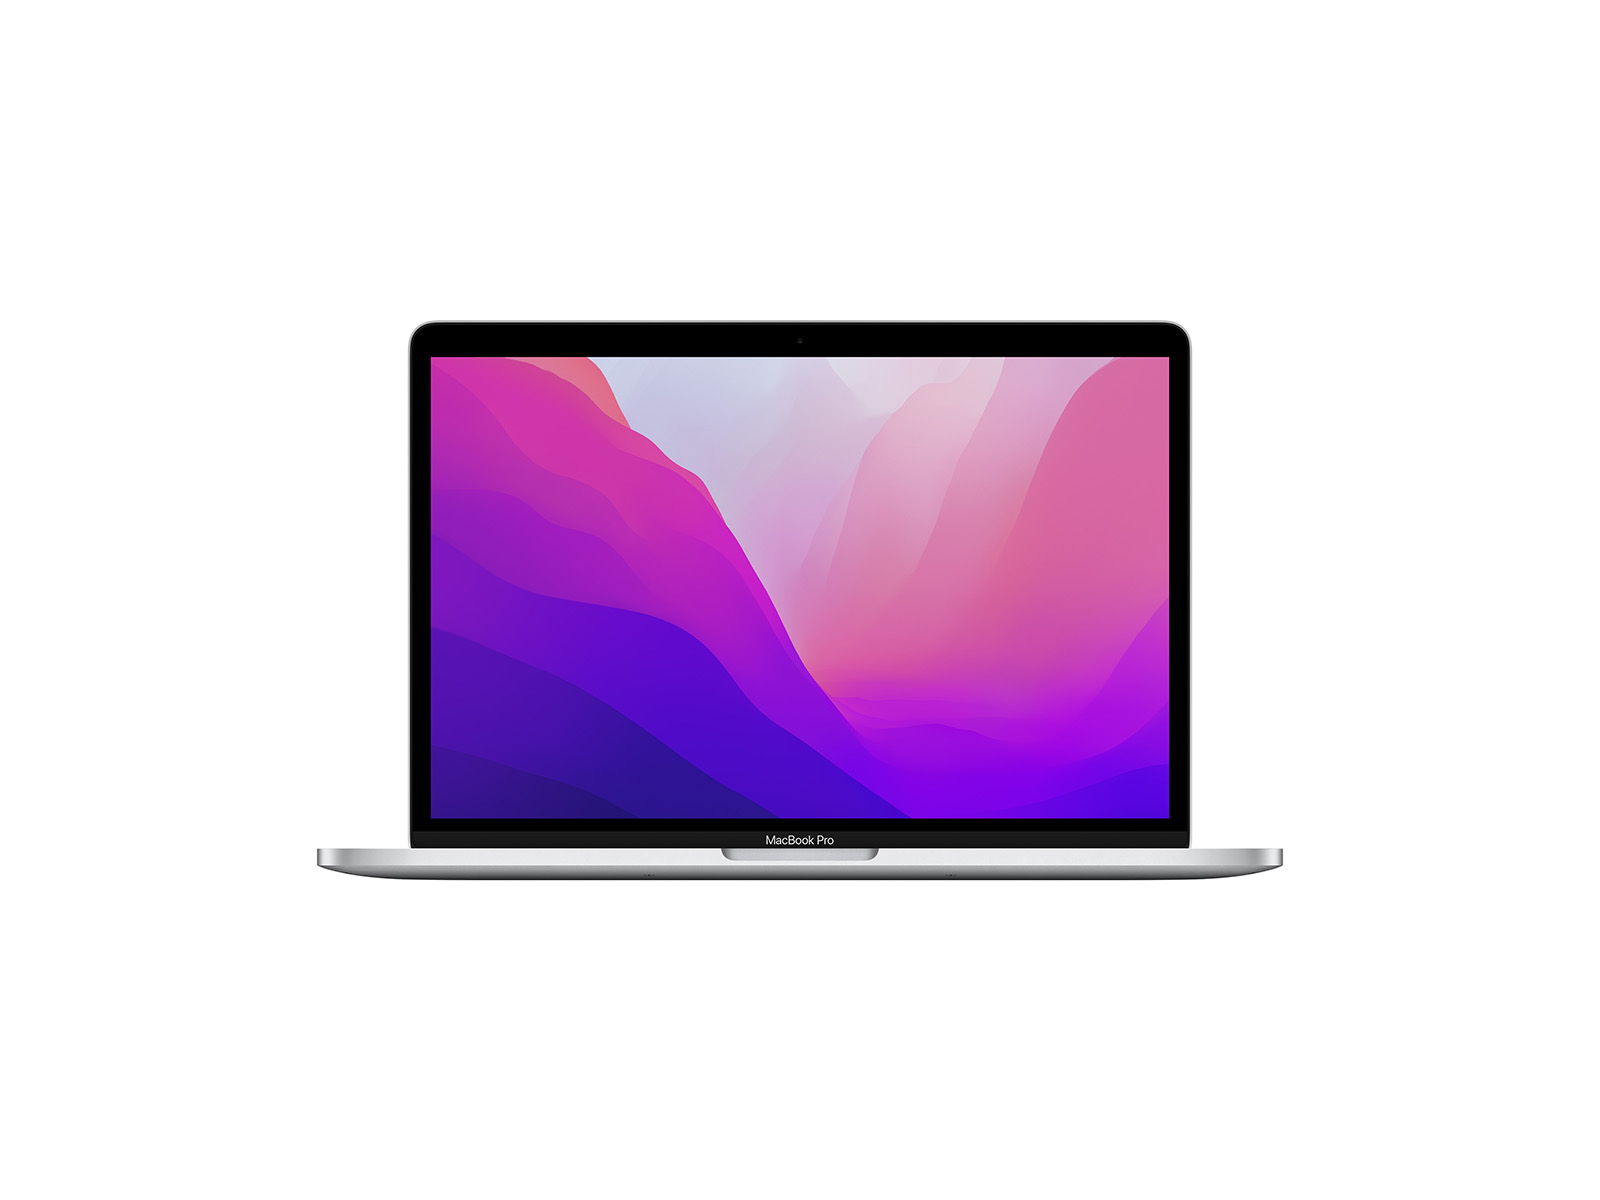 Get A Refurbished MacBook Pro For Under $400